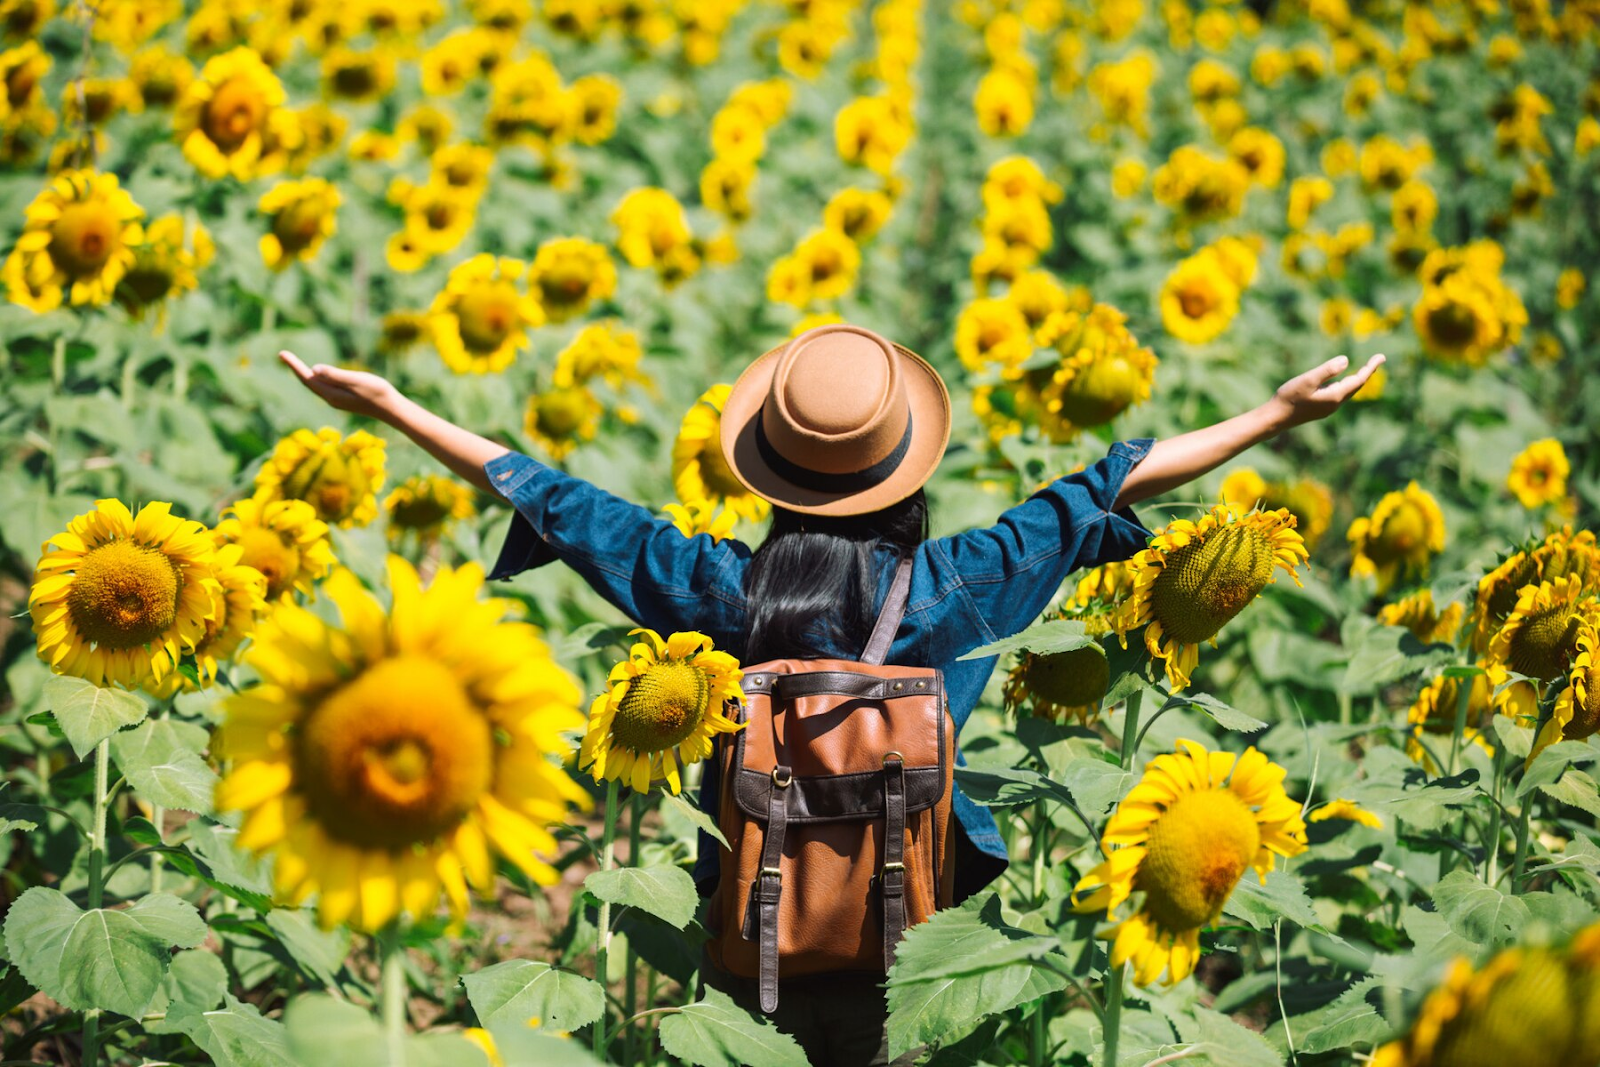 A girl exploring a sunflower field.